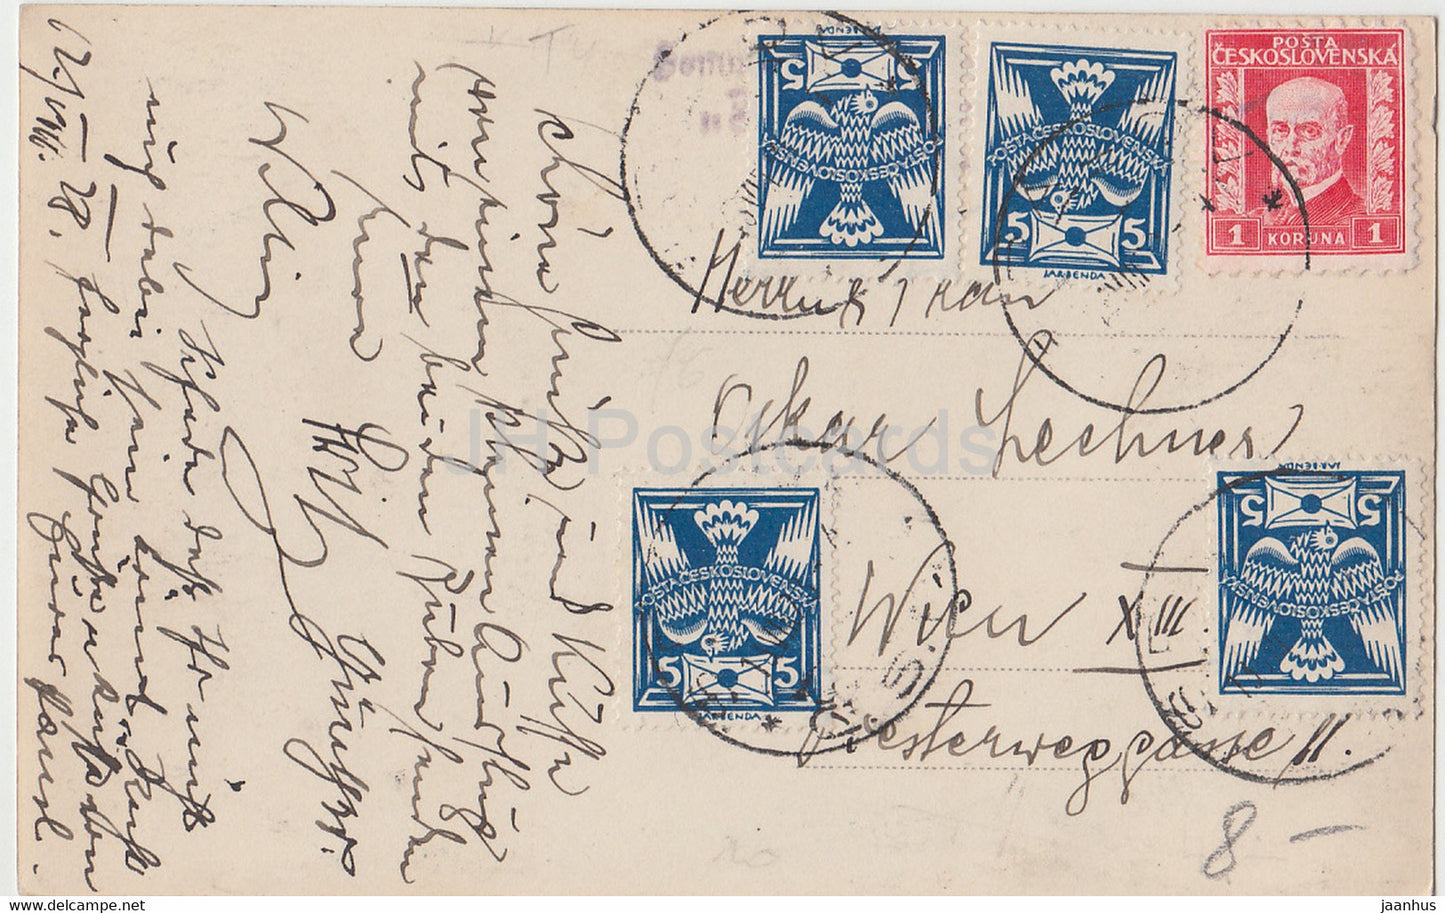 Maria Stein - Elka 58 - old postcard - 1928 - Czechoslovakia - Czech Republic - used